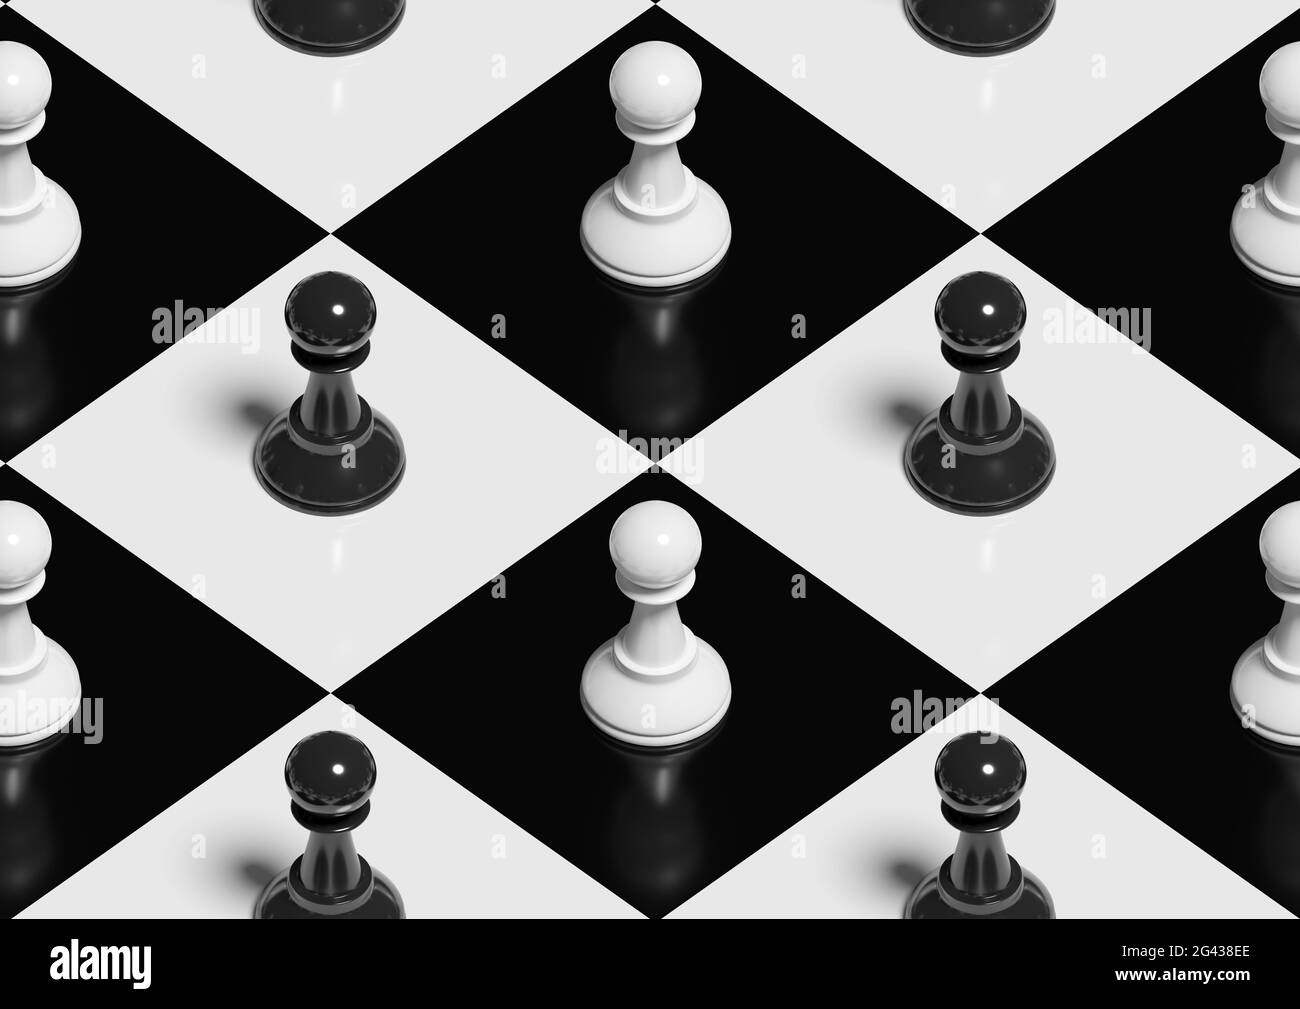 Peones en un tablero de ajedrez. Patrón isométrico integrado. ilustración 3d. Foto de stock